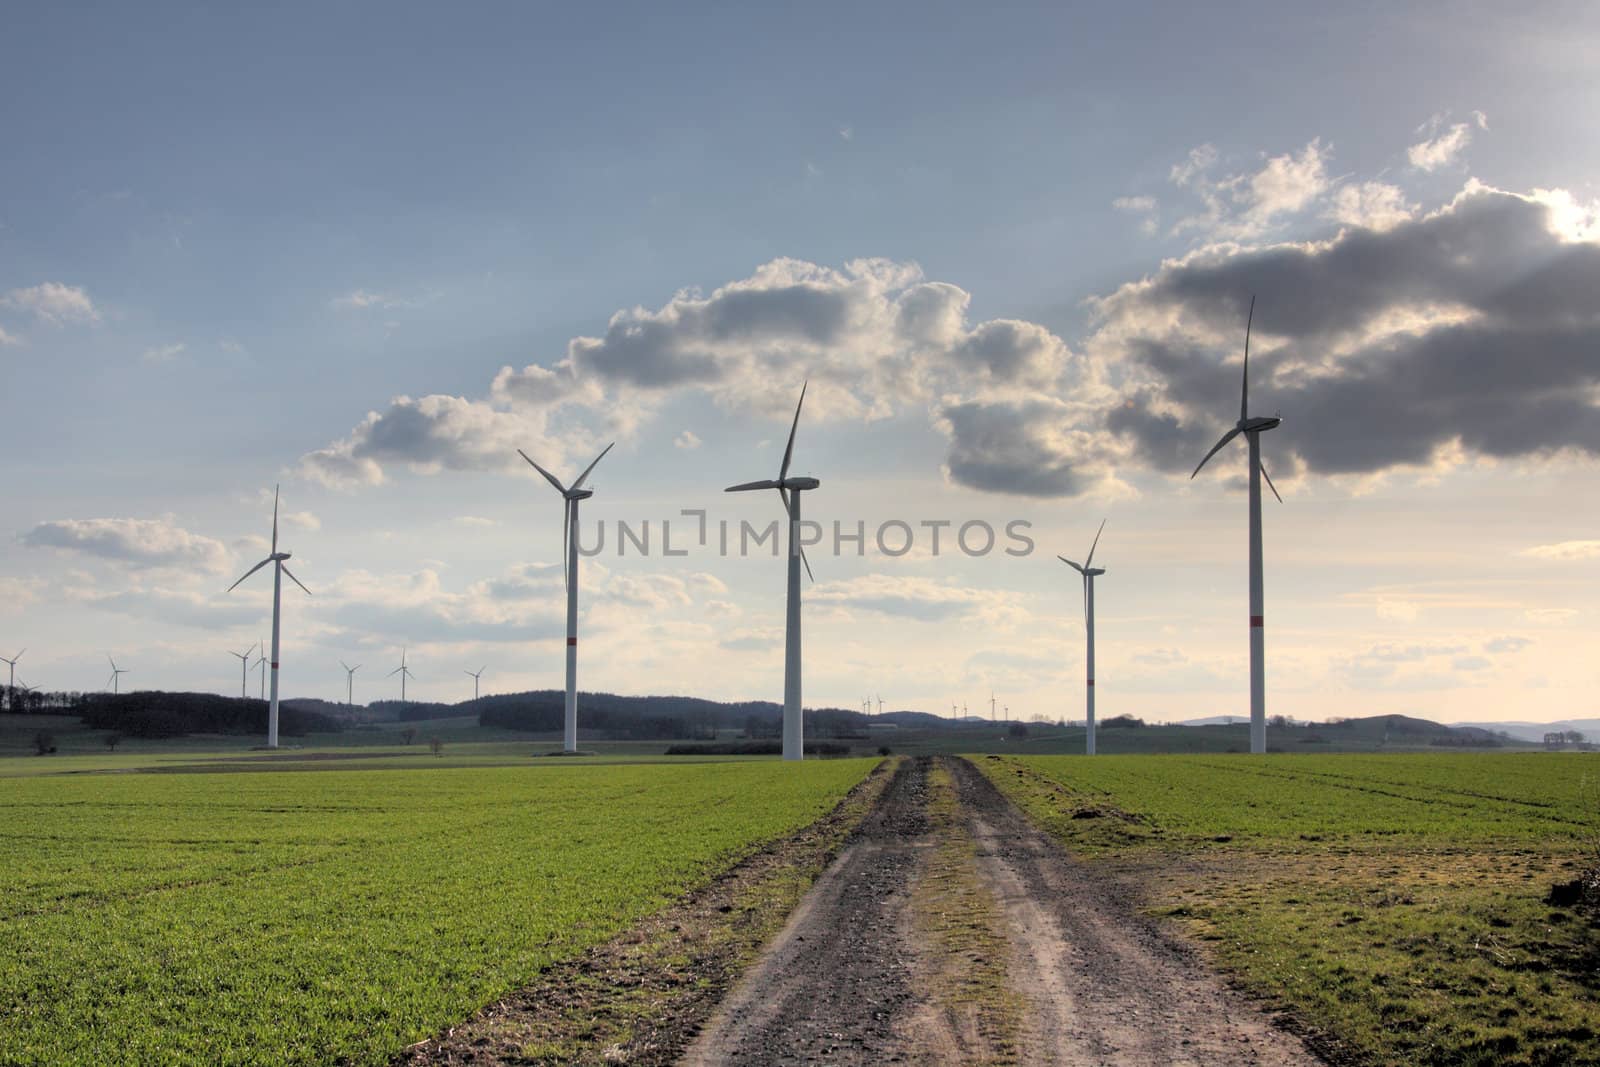 wind turbines near a dirt road in rural german landscape